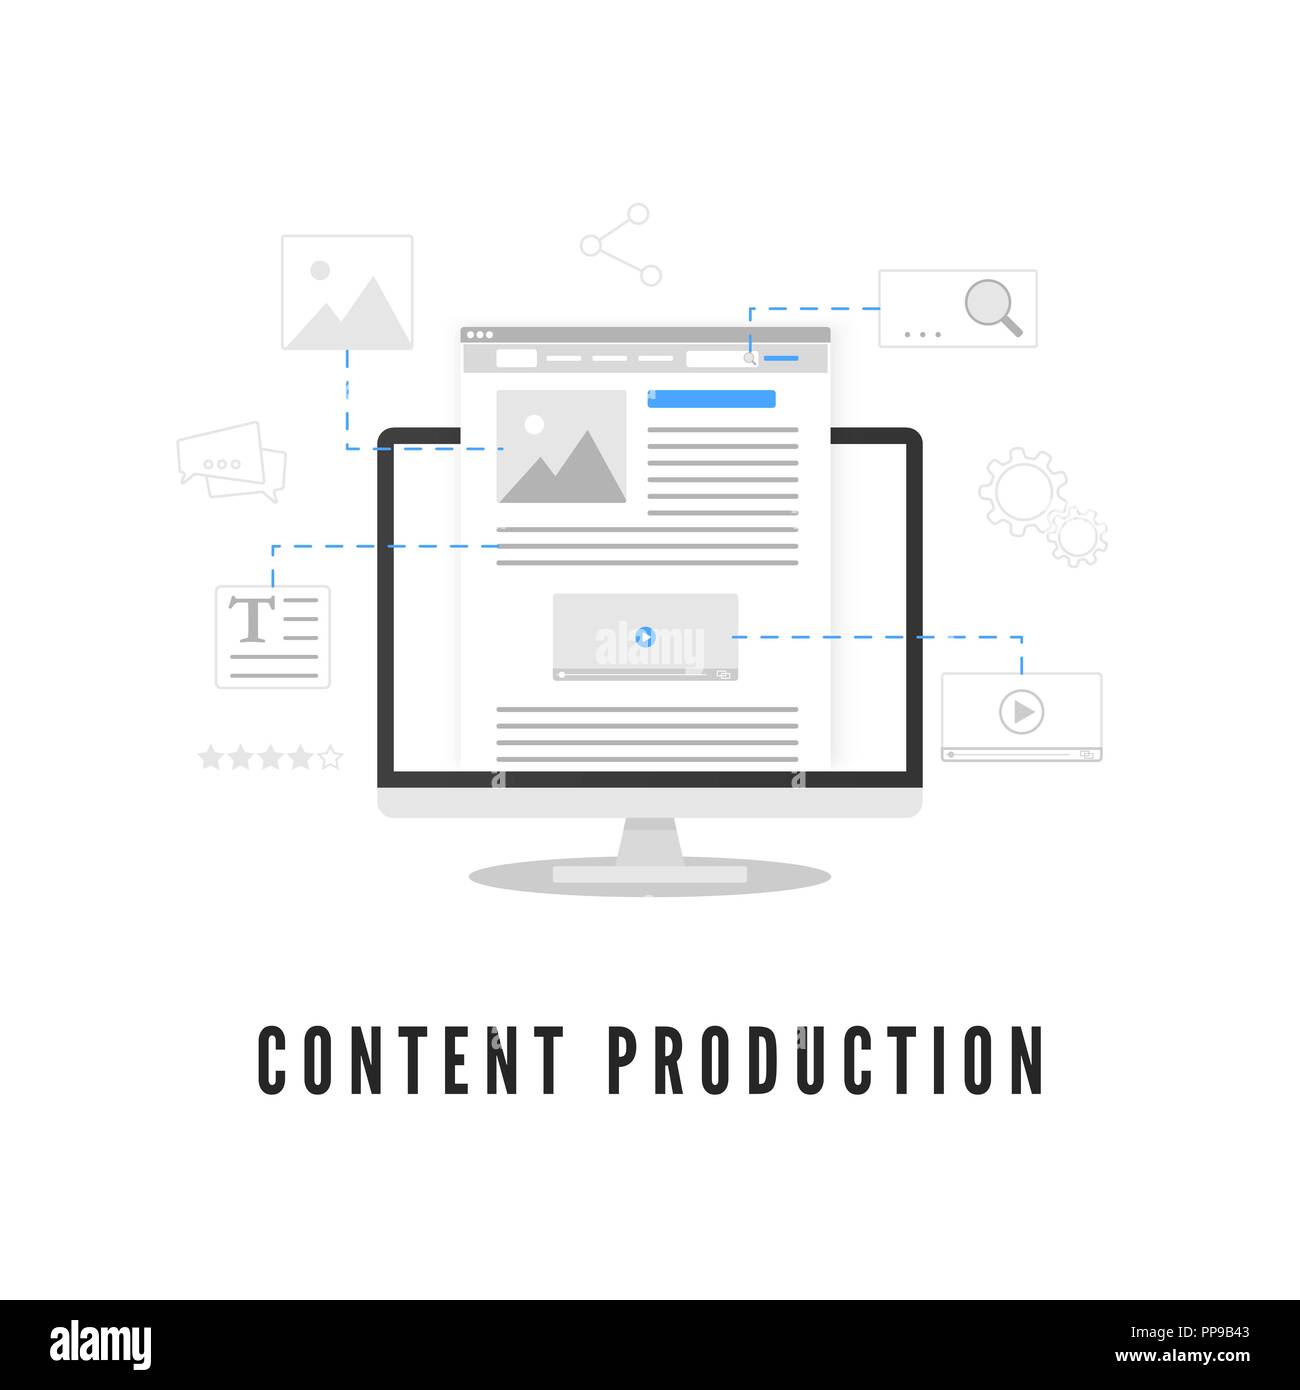 Die Produktion von Inhalten. Blogging oder Nachrichten erstellen. Web site Entwicklung am PC-Bildschirm aus verschiedenen Elementen. Vector Illustration Stock Vektor